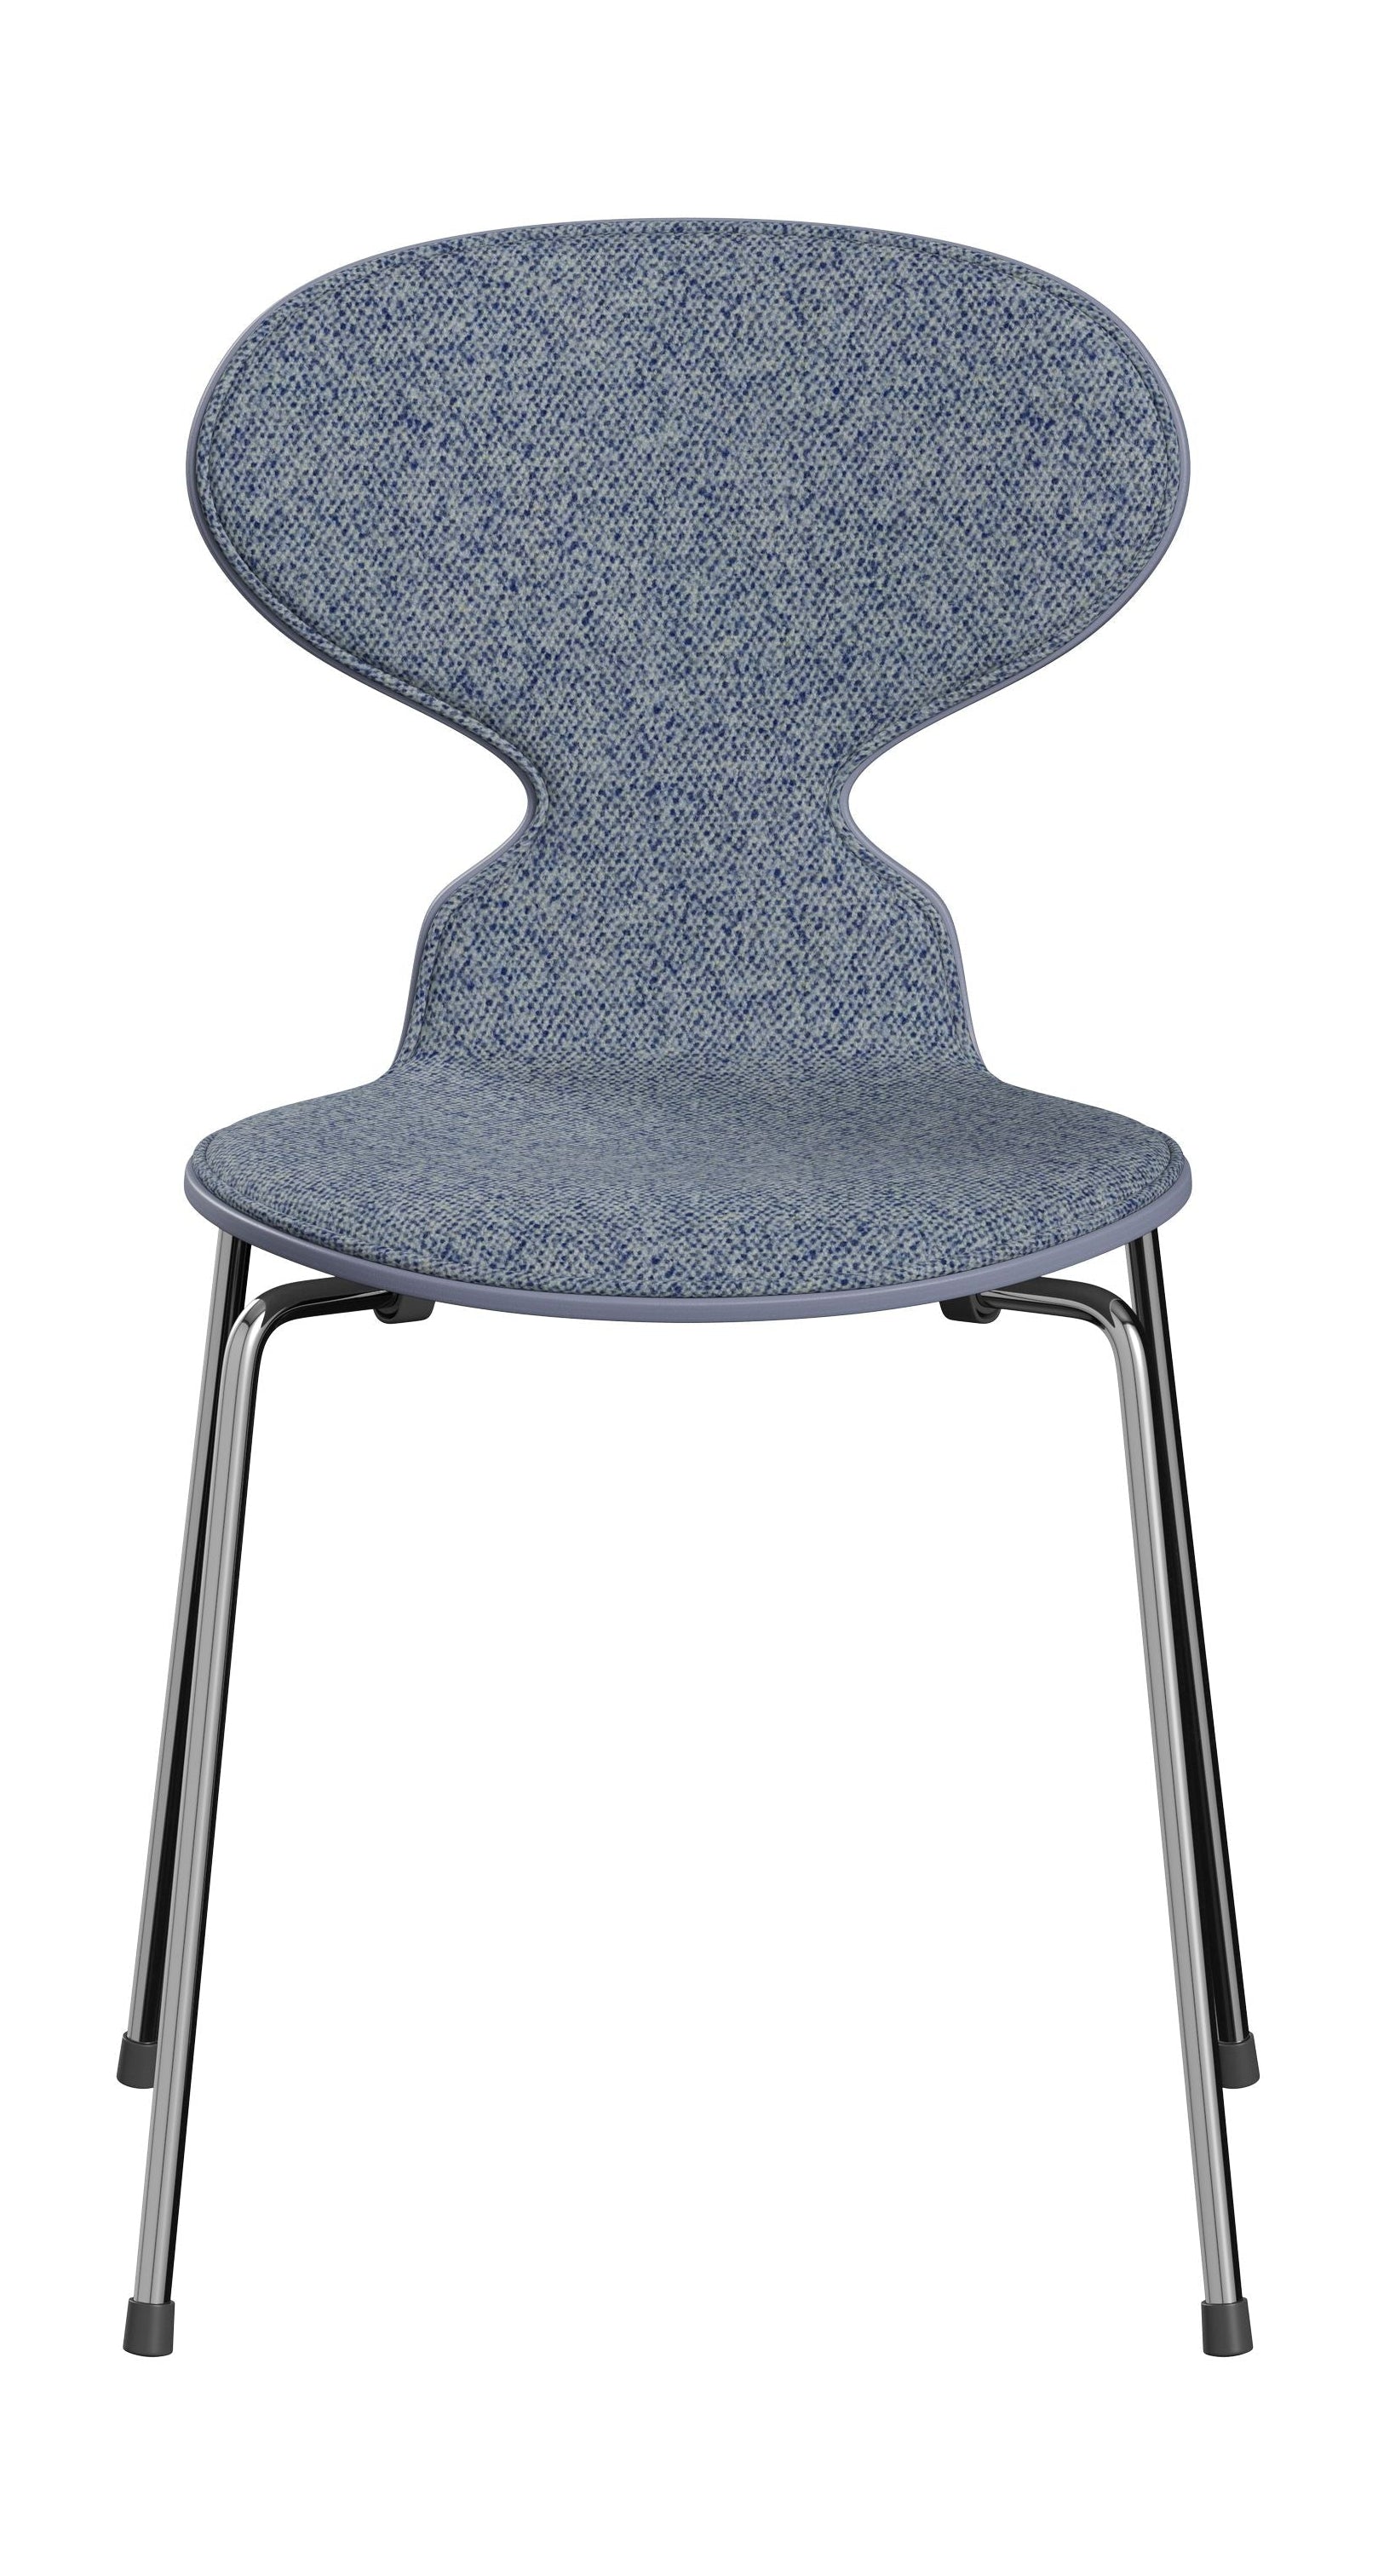 Fritz Hansen 3101 Ant stol foran polstret, skal: farvet finer lavendel blå, polstring: vanir tekstil lyseblå, base: stål/krom